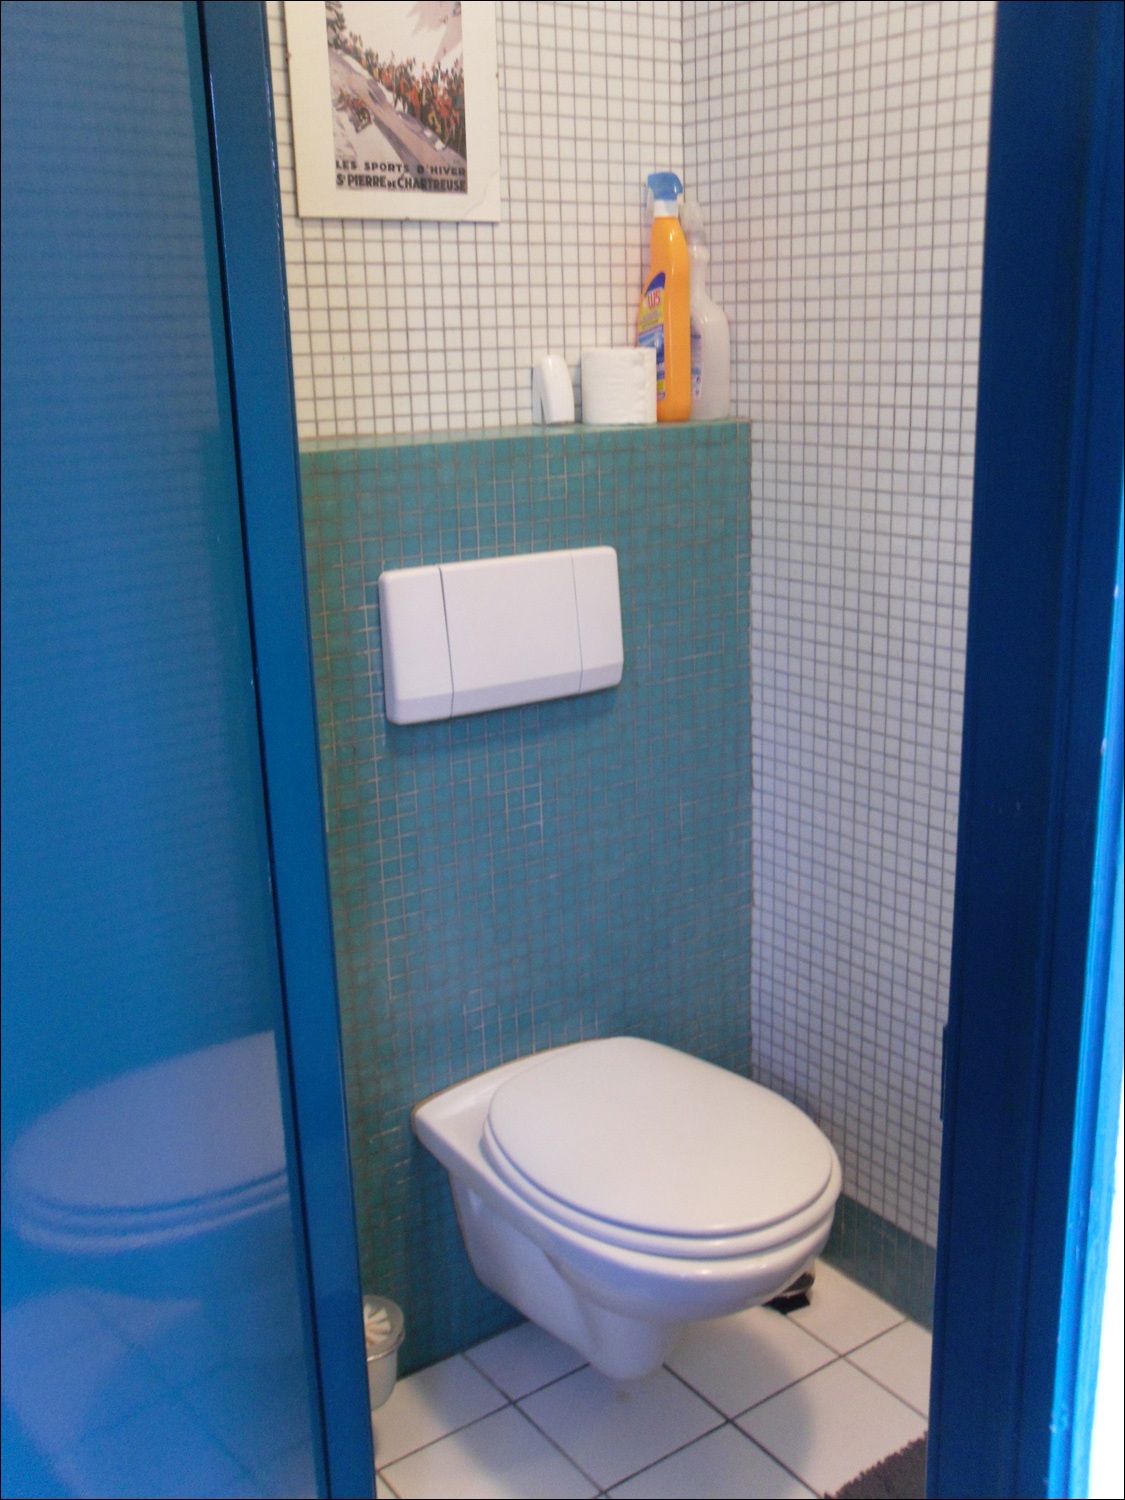 Second floor toilet in Delft house